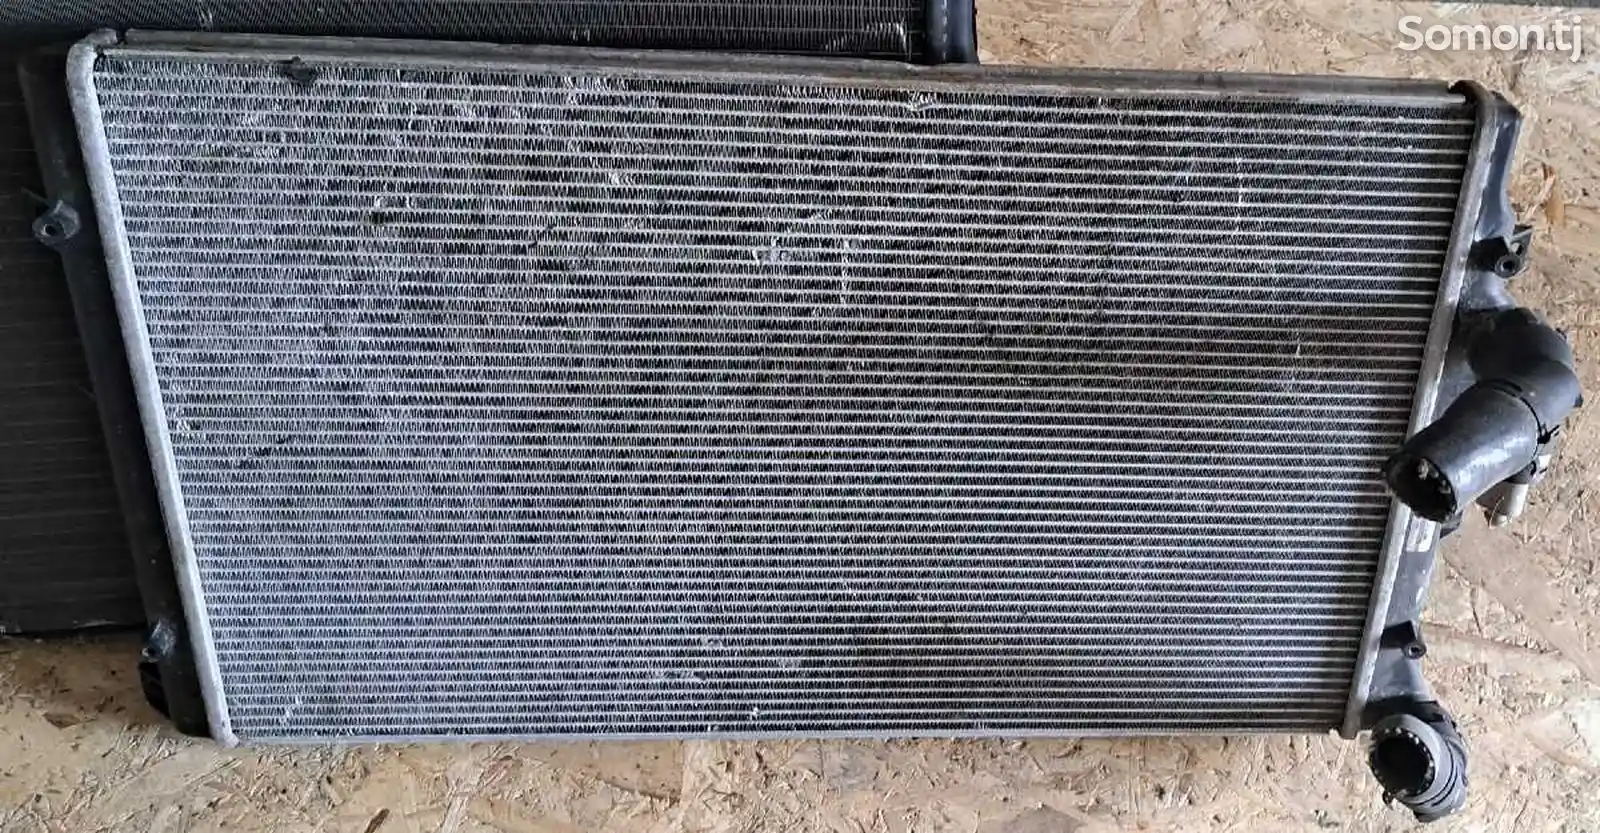 Радиатор от Volkswagen